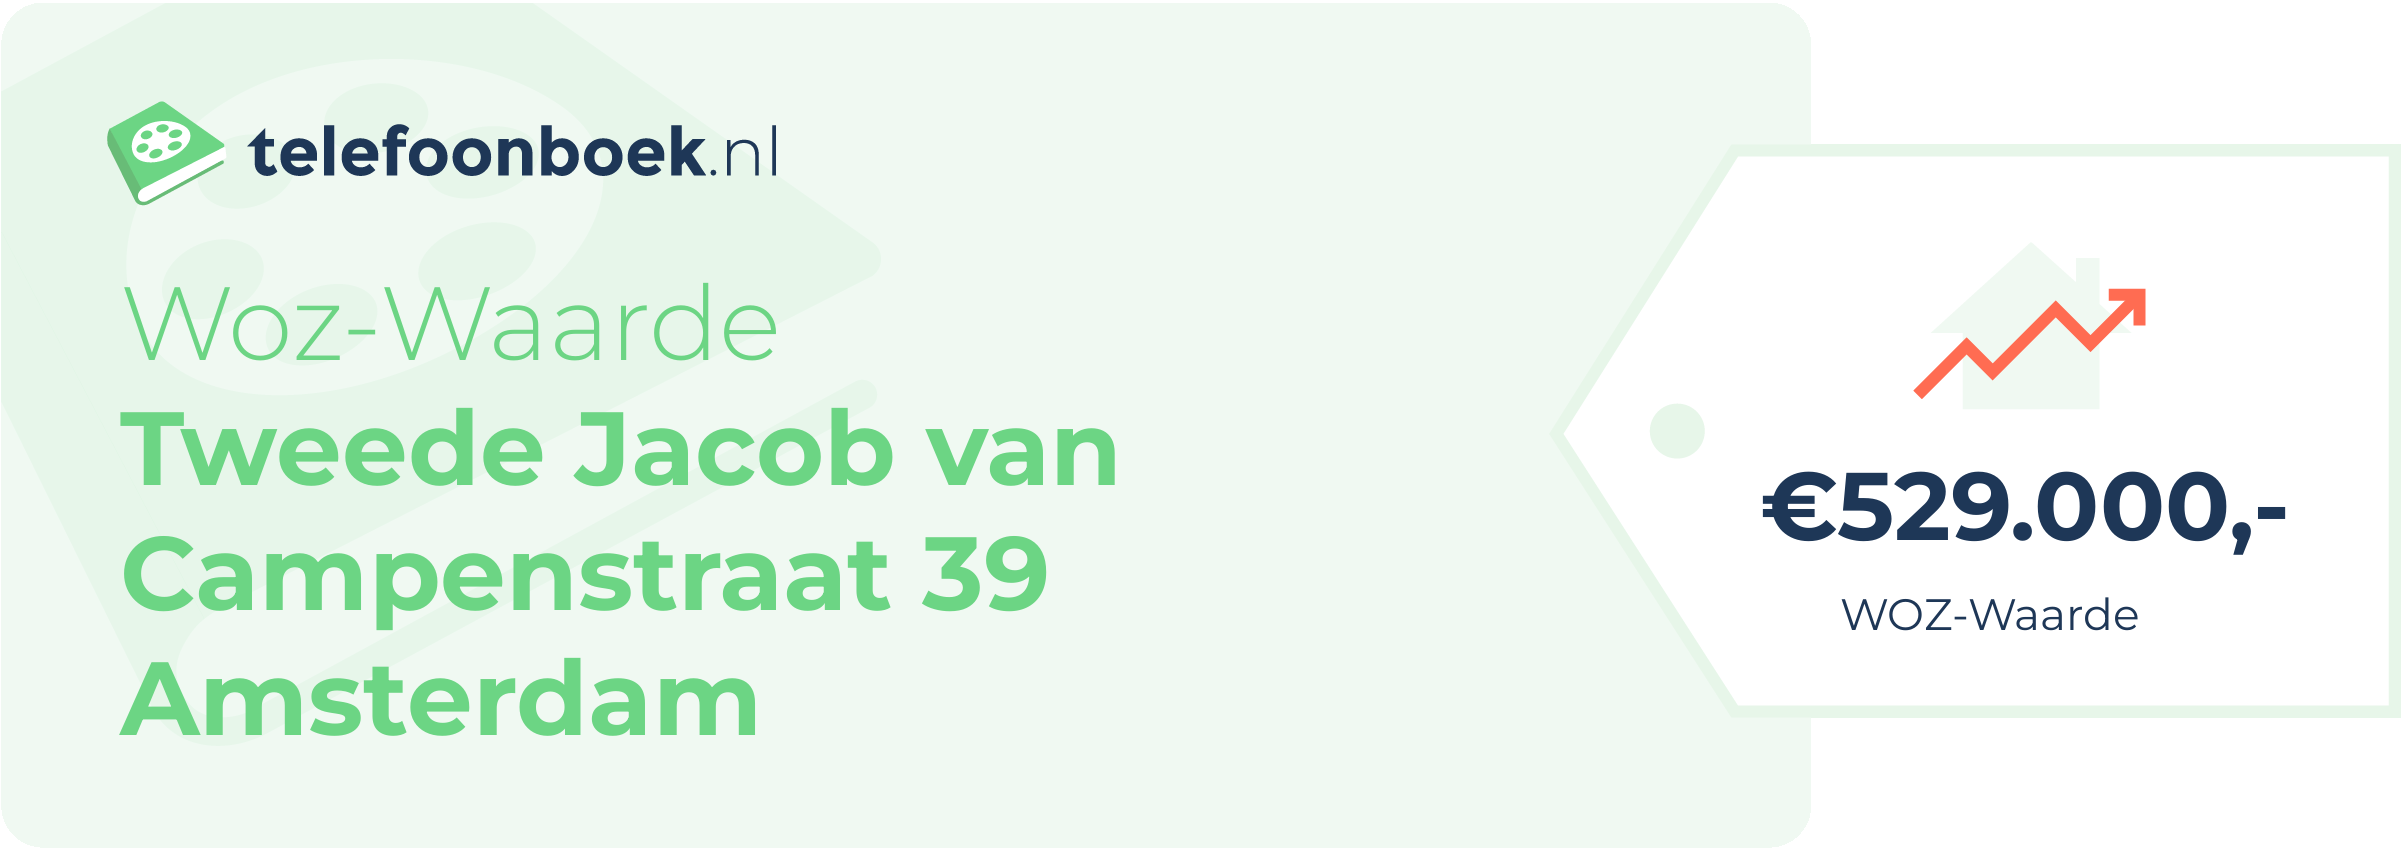 WOZ-waarde Tweede Jacob Van Campenstraat 39 Amsterdam